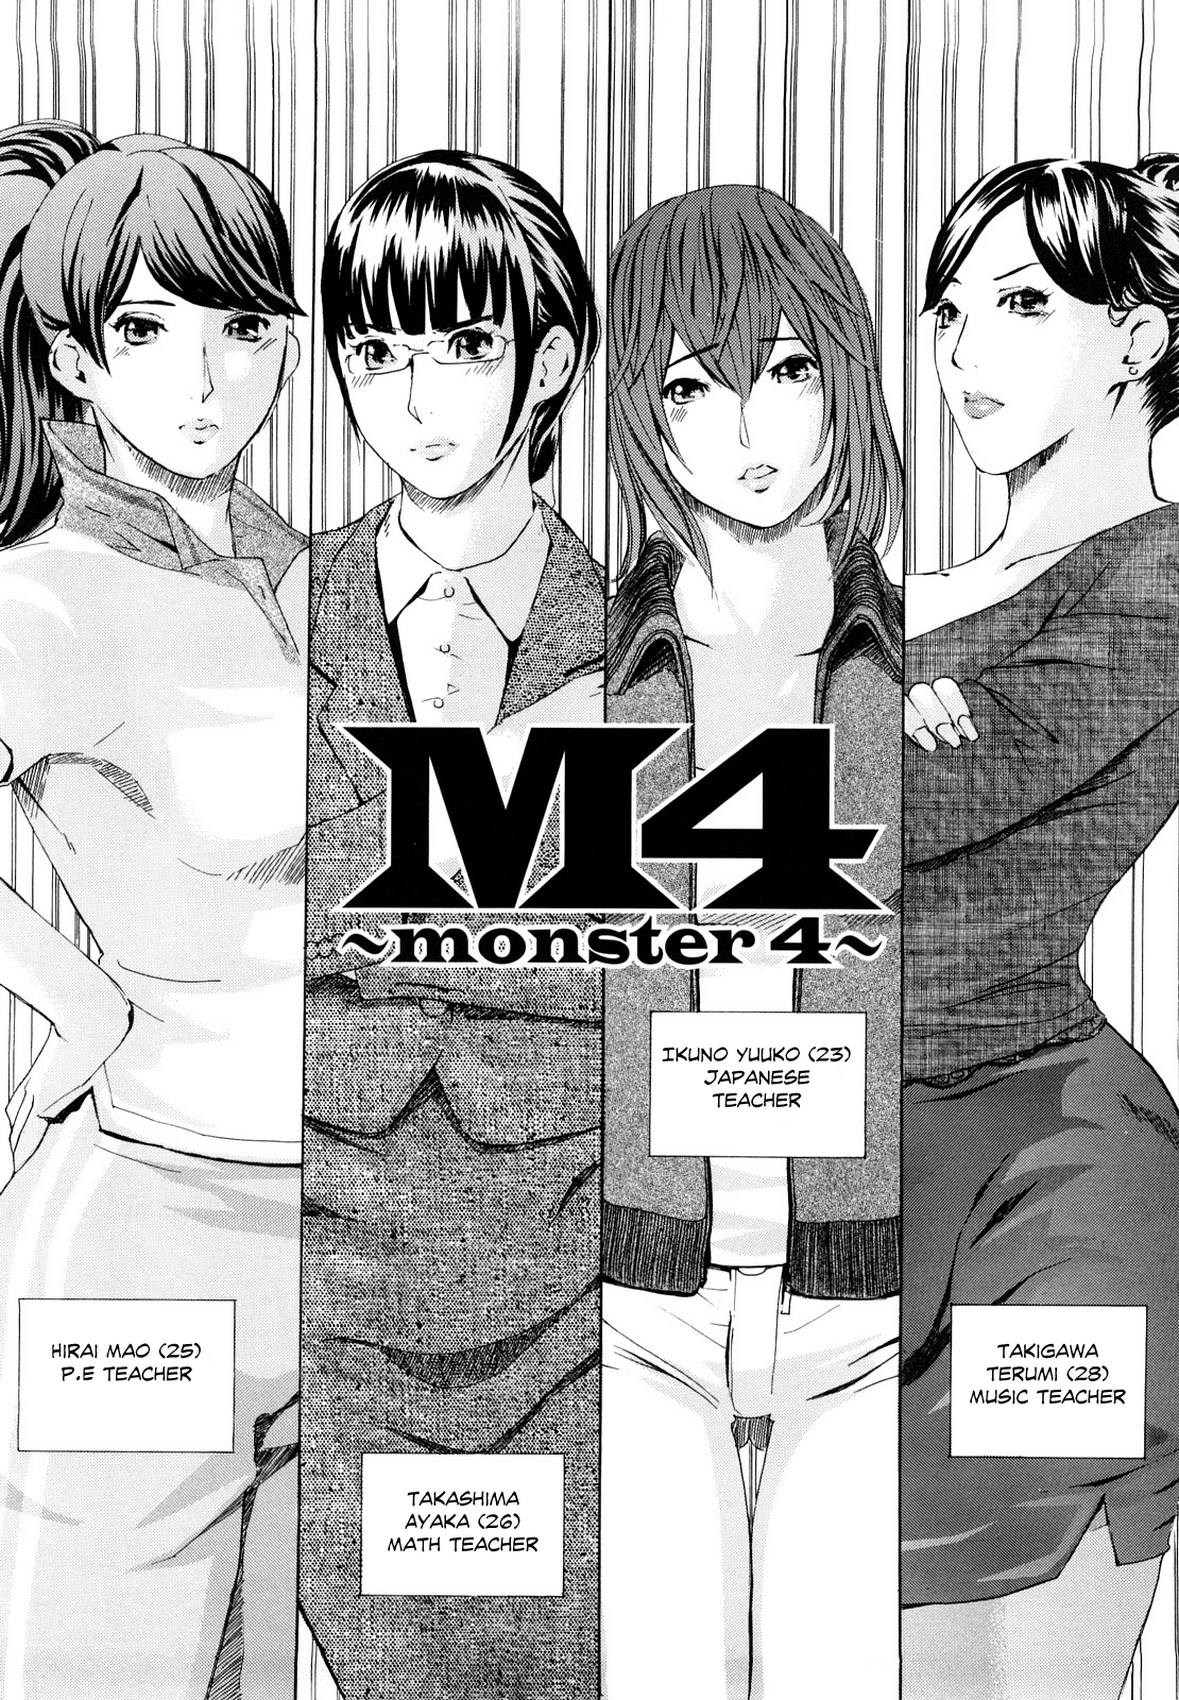 Clone Ningen – M4 Monster4